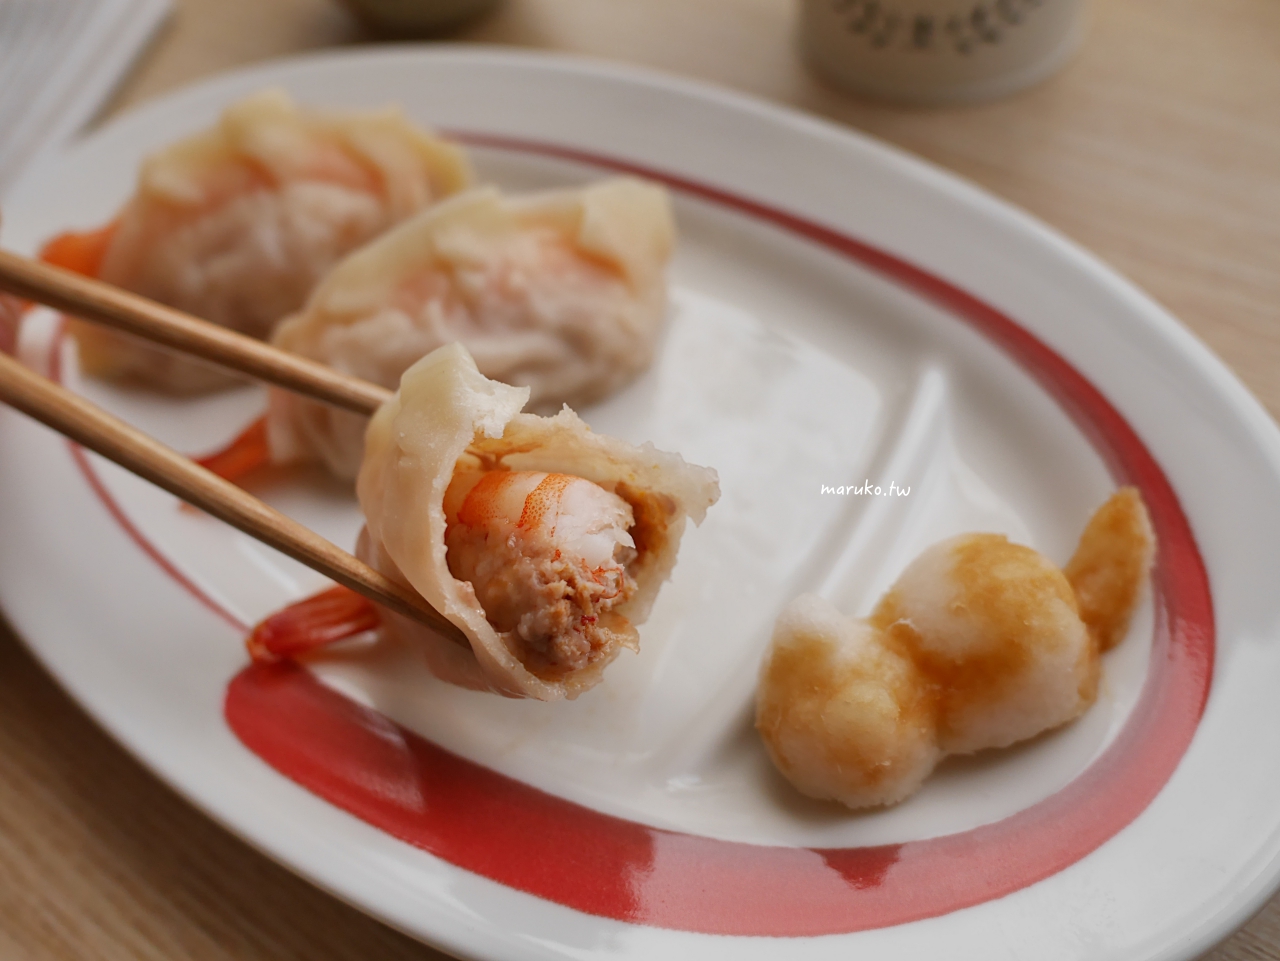 【食譜】InPure 蒸舒壺 12種烹煮模式 白色美型家電推薦及實用心得分享 @Maruko與美食有個約會